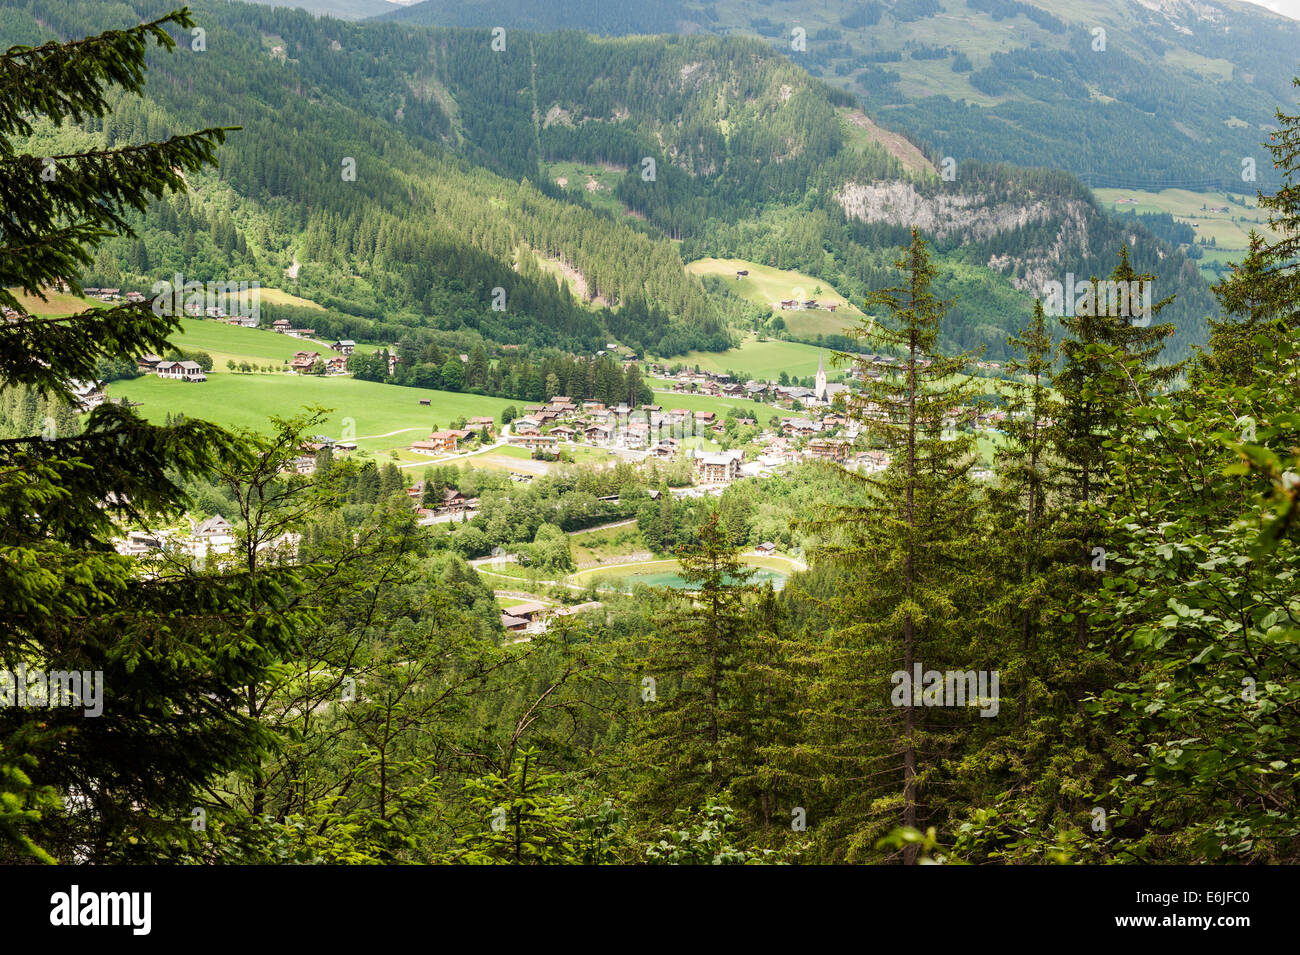 Les Chutes de Krimml en Autriche. Les chutes sont les plus élevés en Europe et le cinquième plus élevé au monde. Banque D'Images